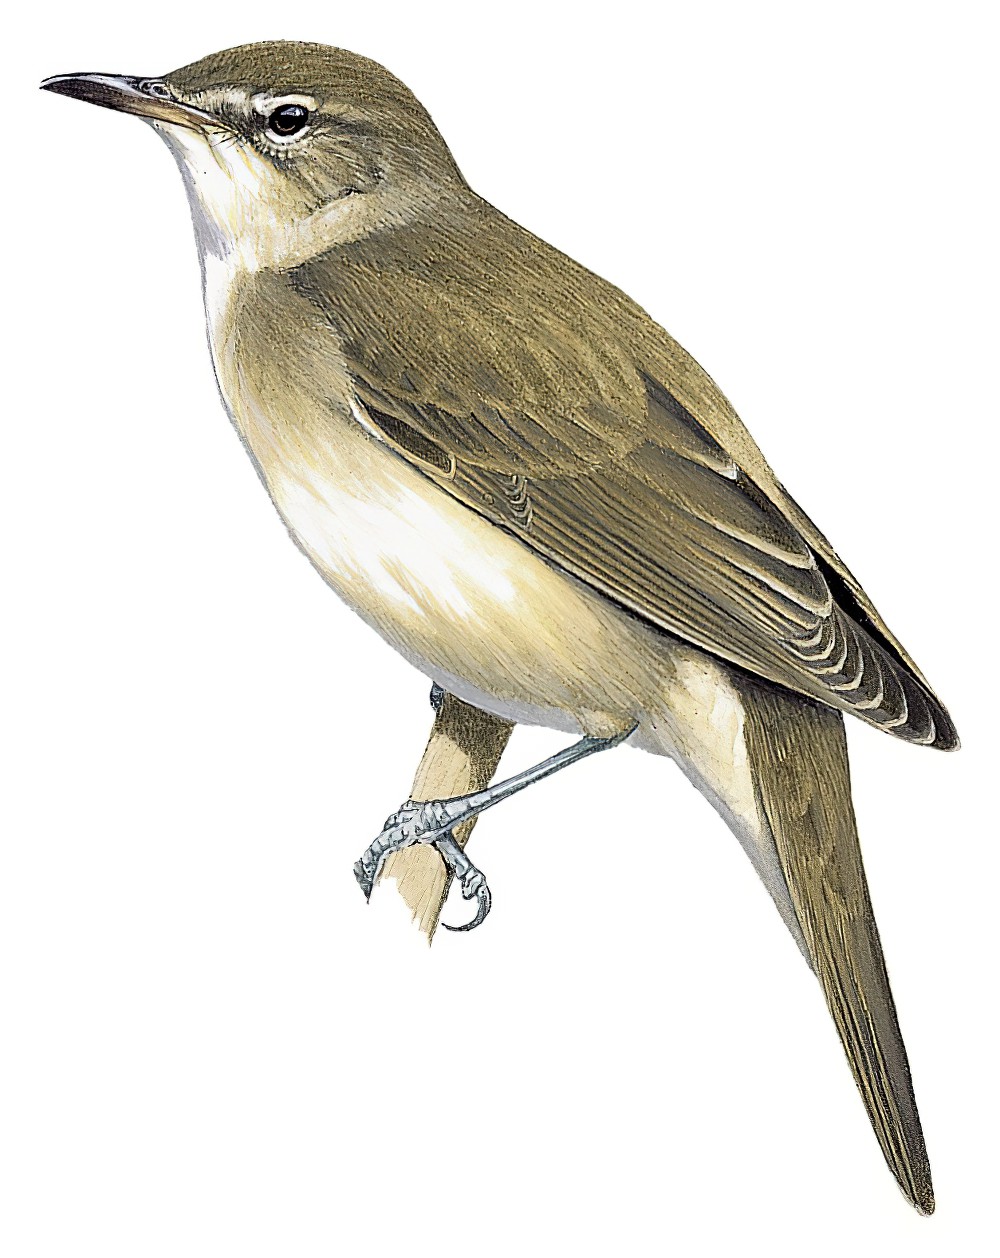 Basra Reed Warbler / Acrocephalus griseldis